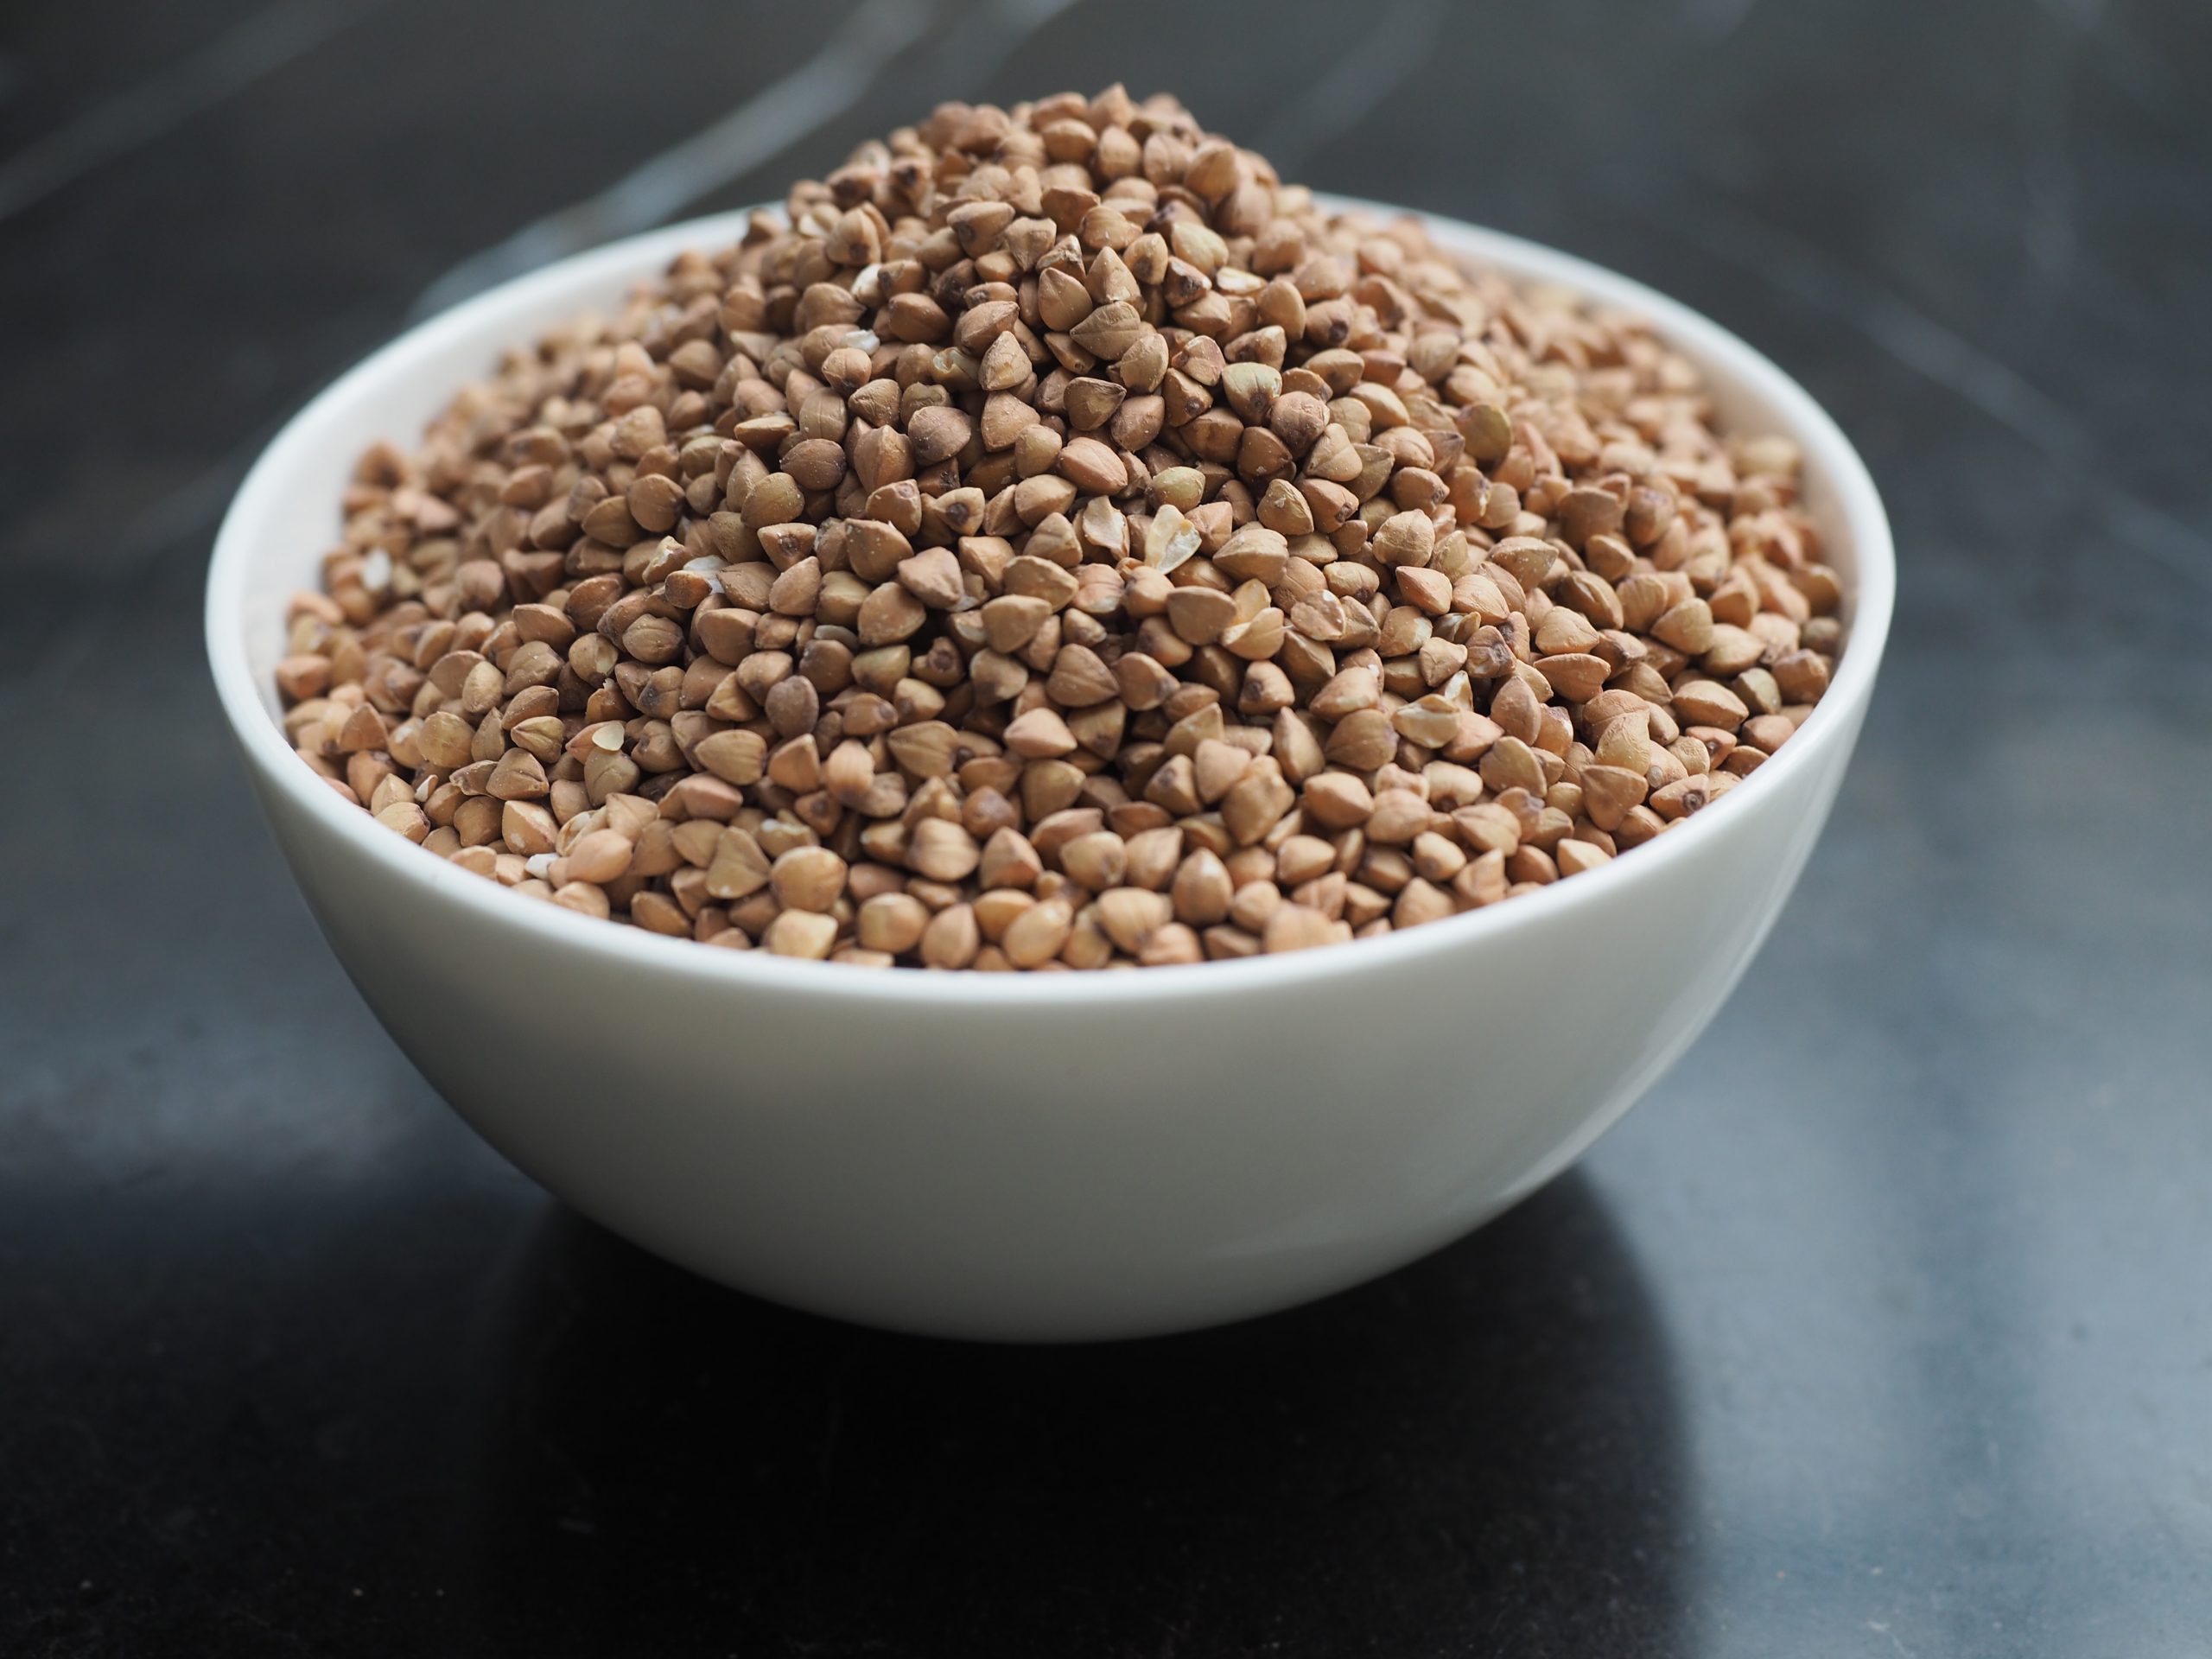 The health benefits of buckwheat